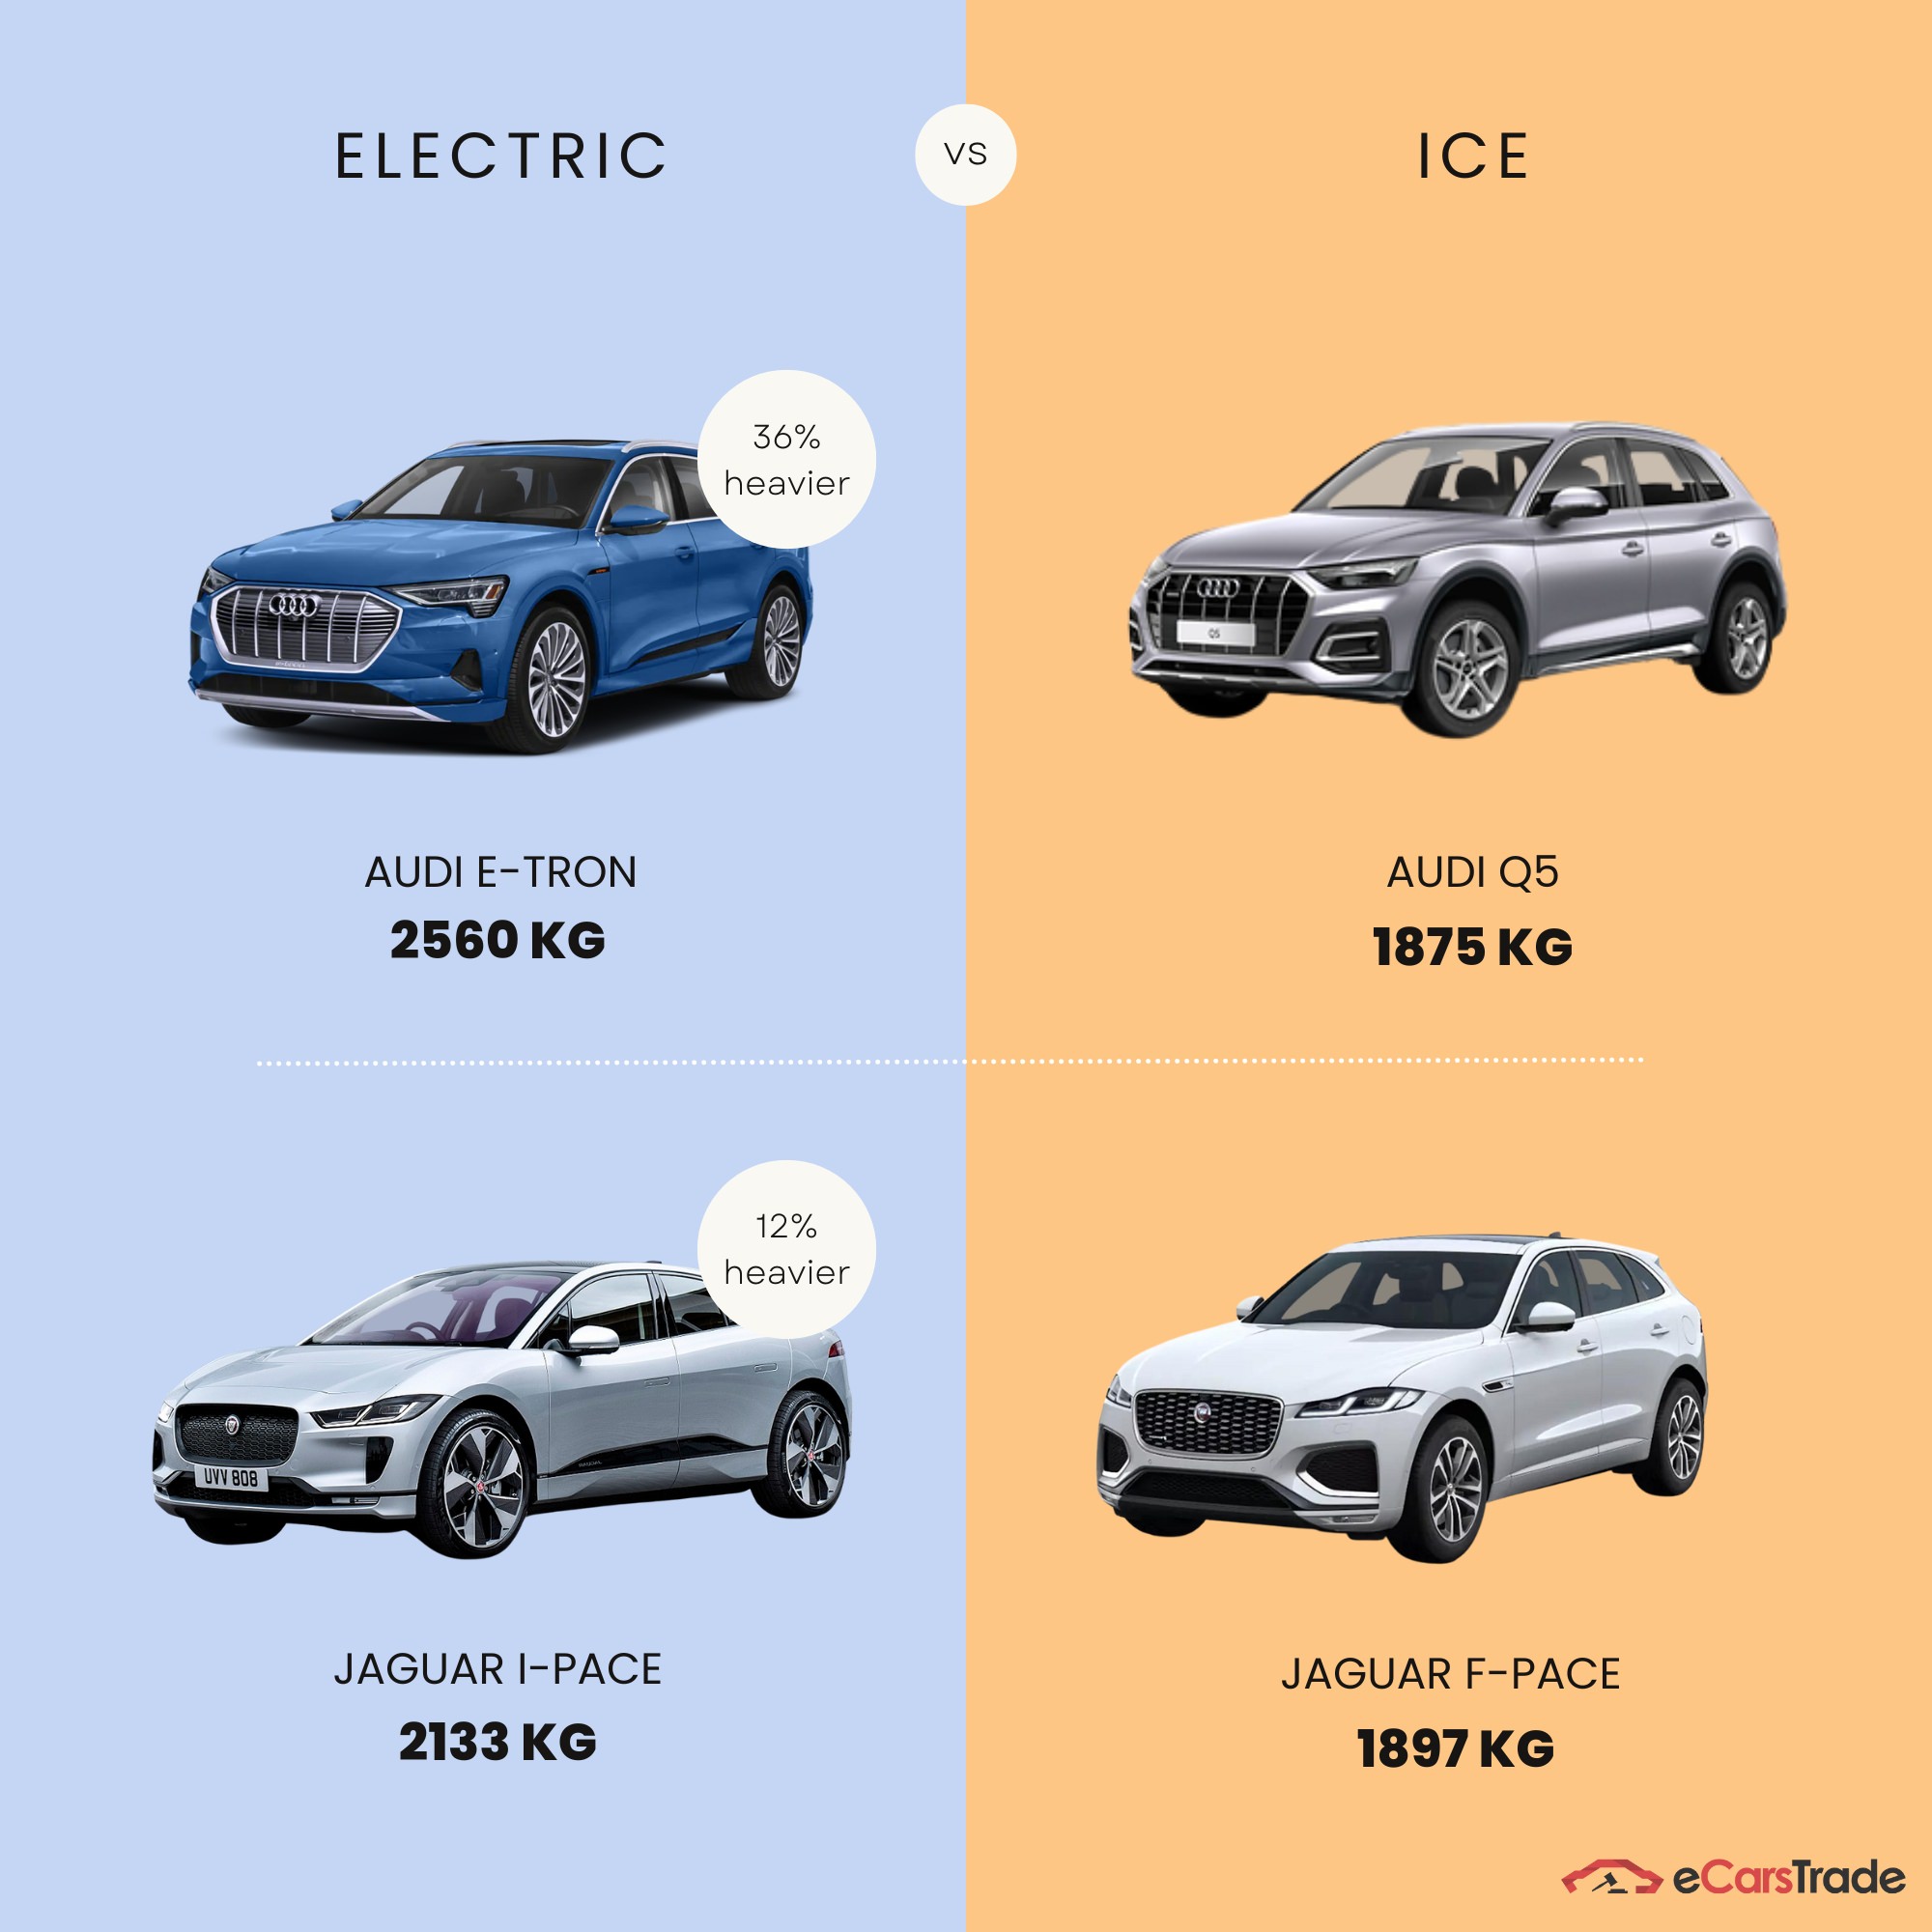 infografika ukazující rozdíl hmotnosti mezi elektrickými a ICE vozidly